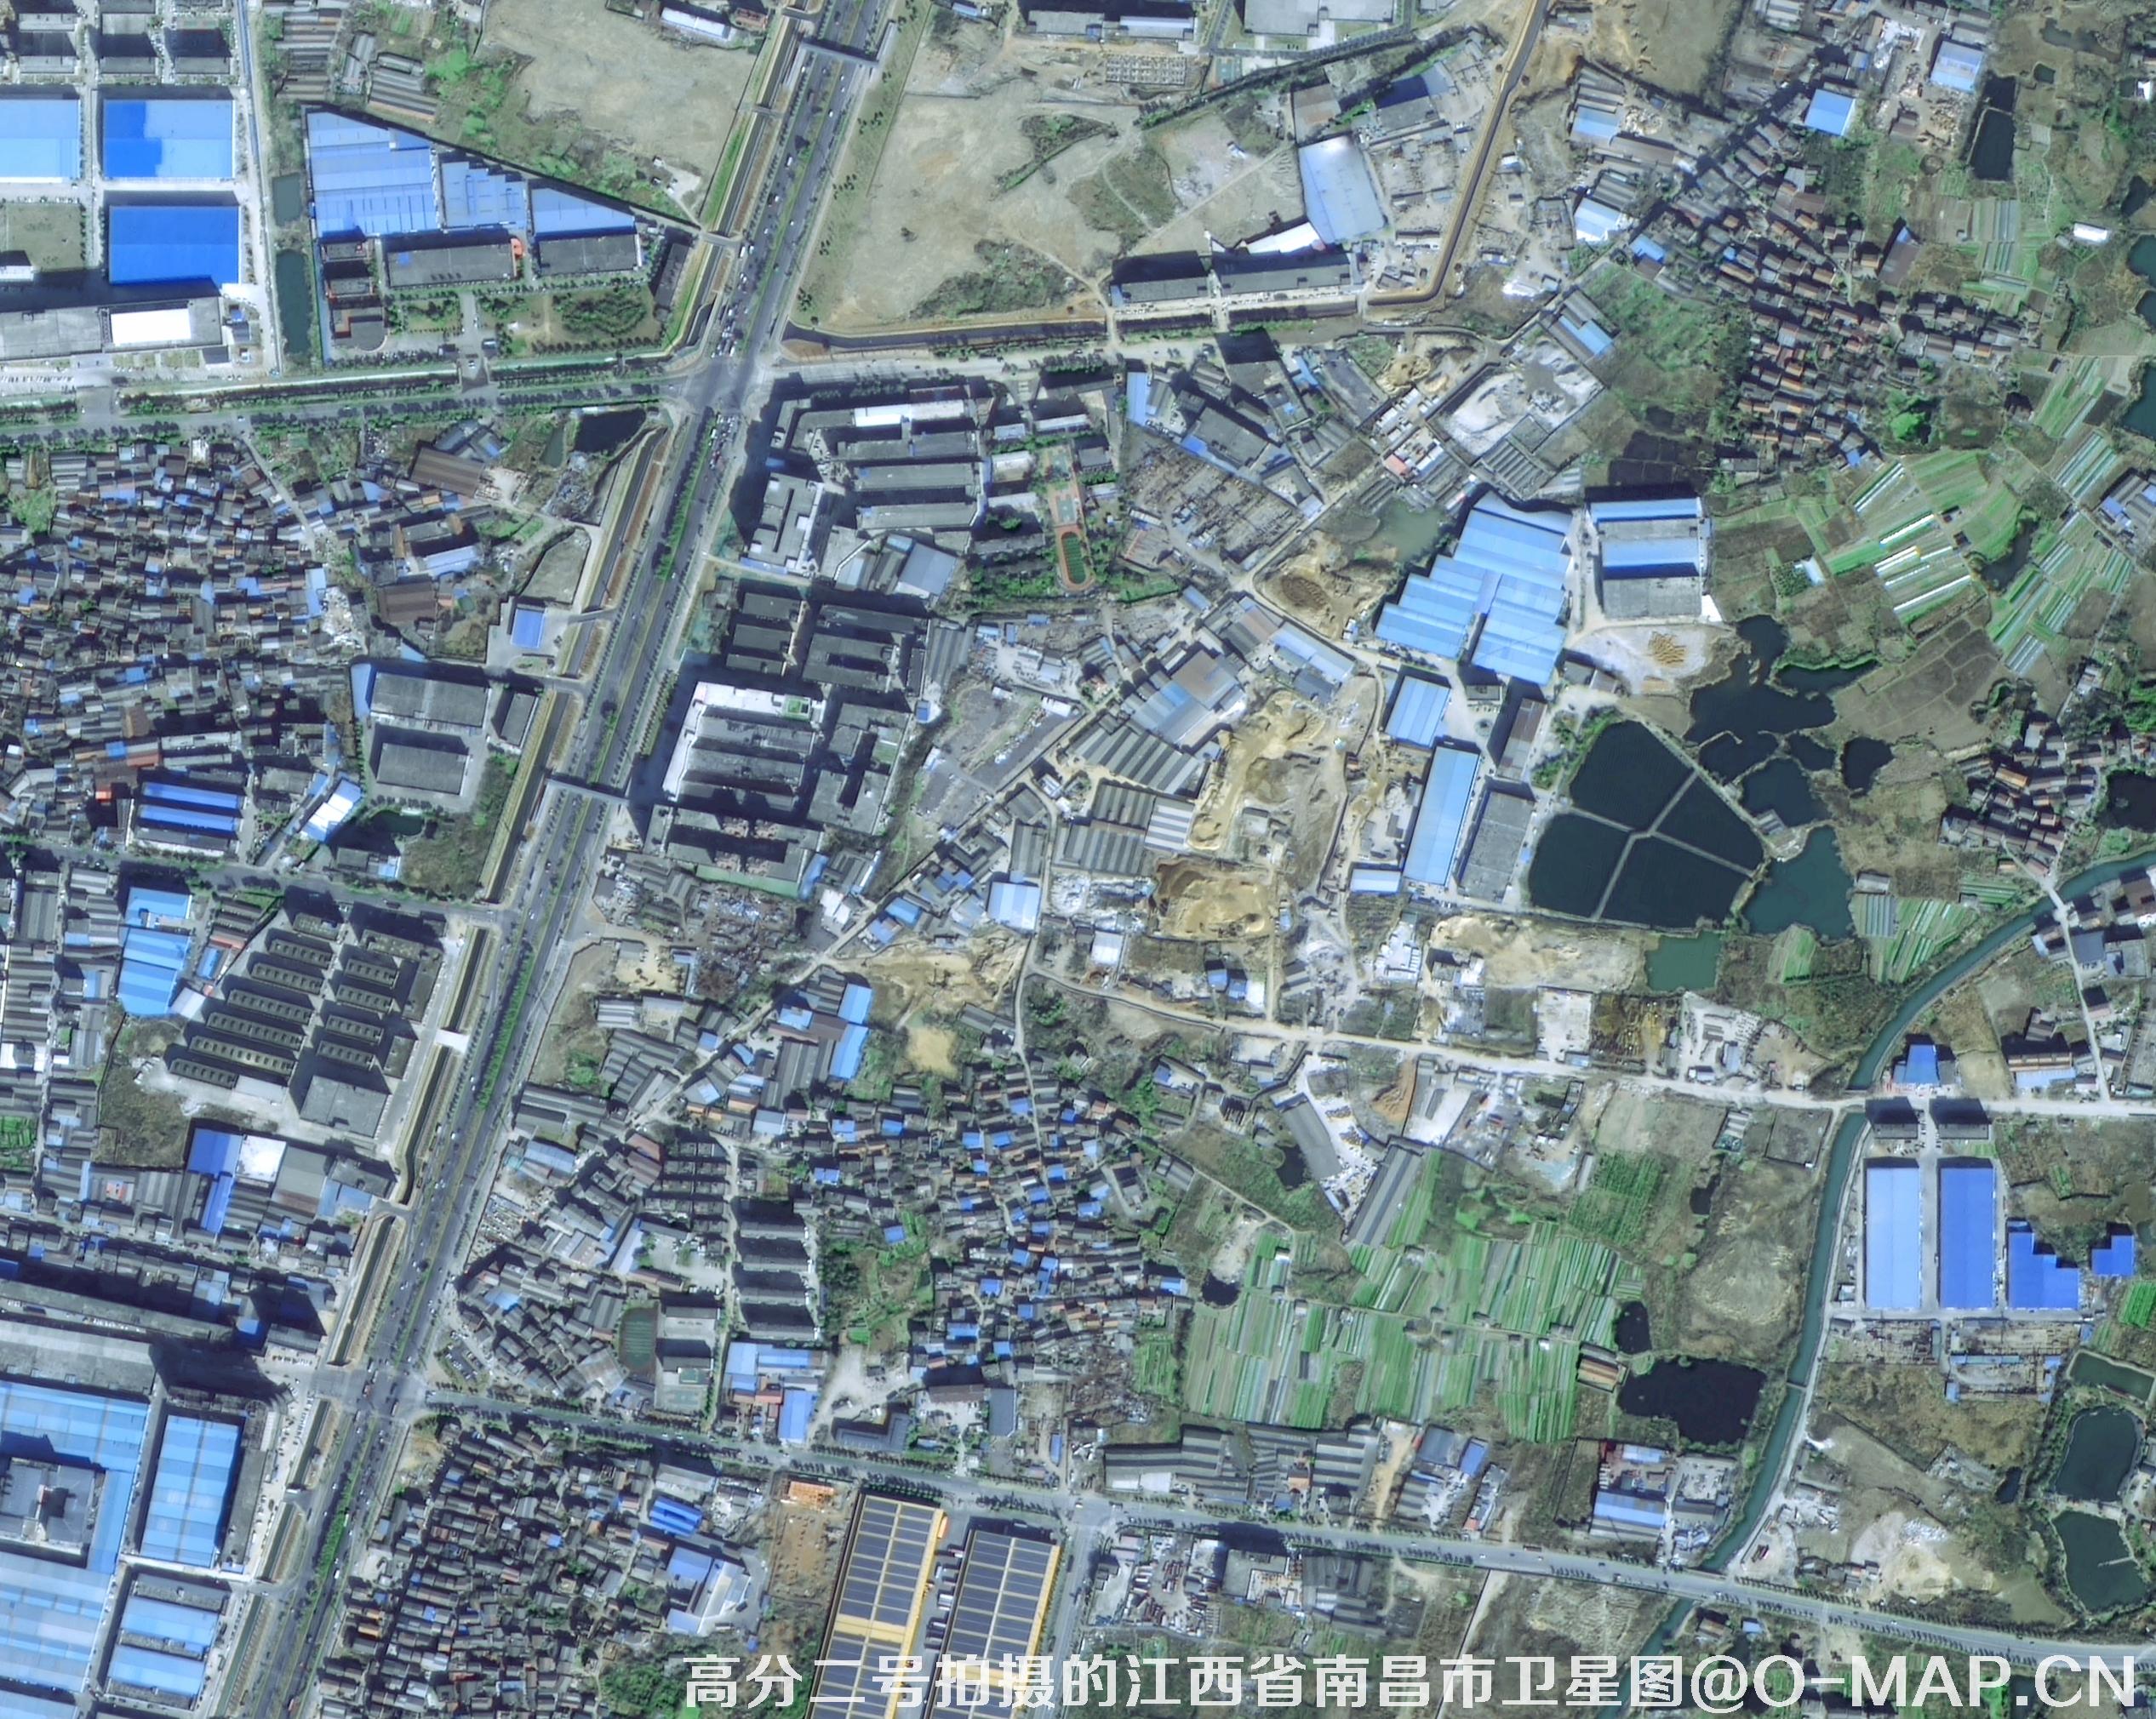 高分二号卫星拍摄的0.8米分辨率影像图片